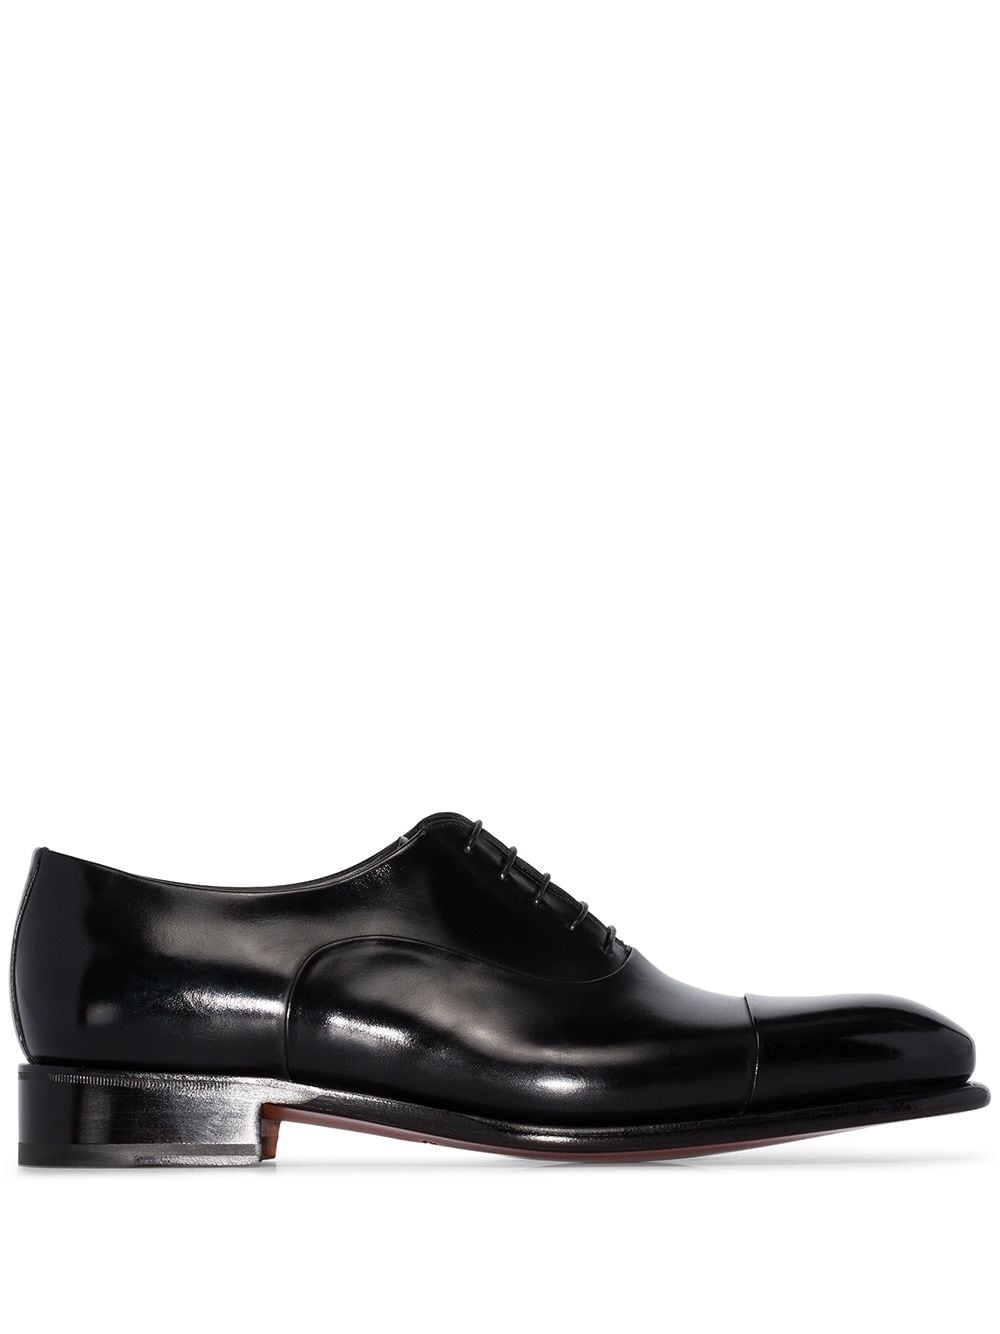 Santoni leather Oxford shoes - Black von Santoni